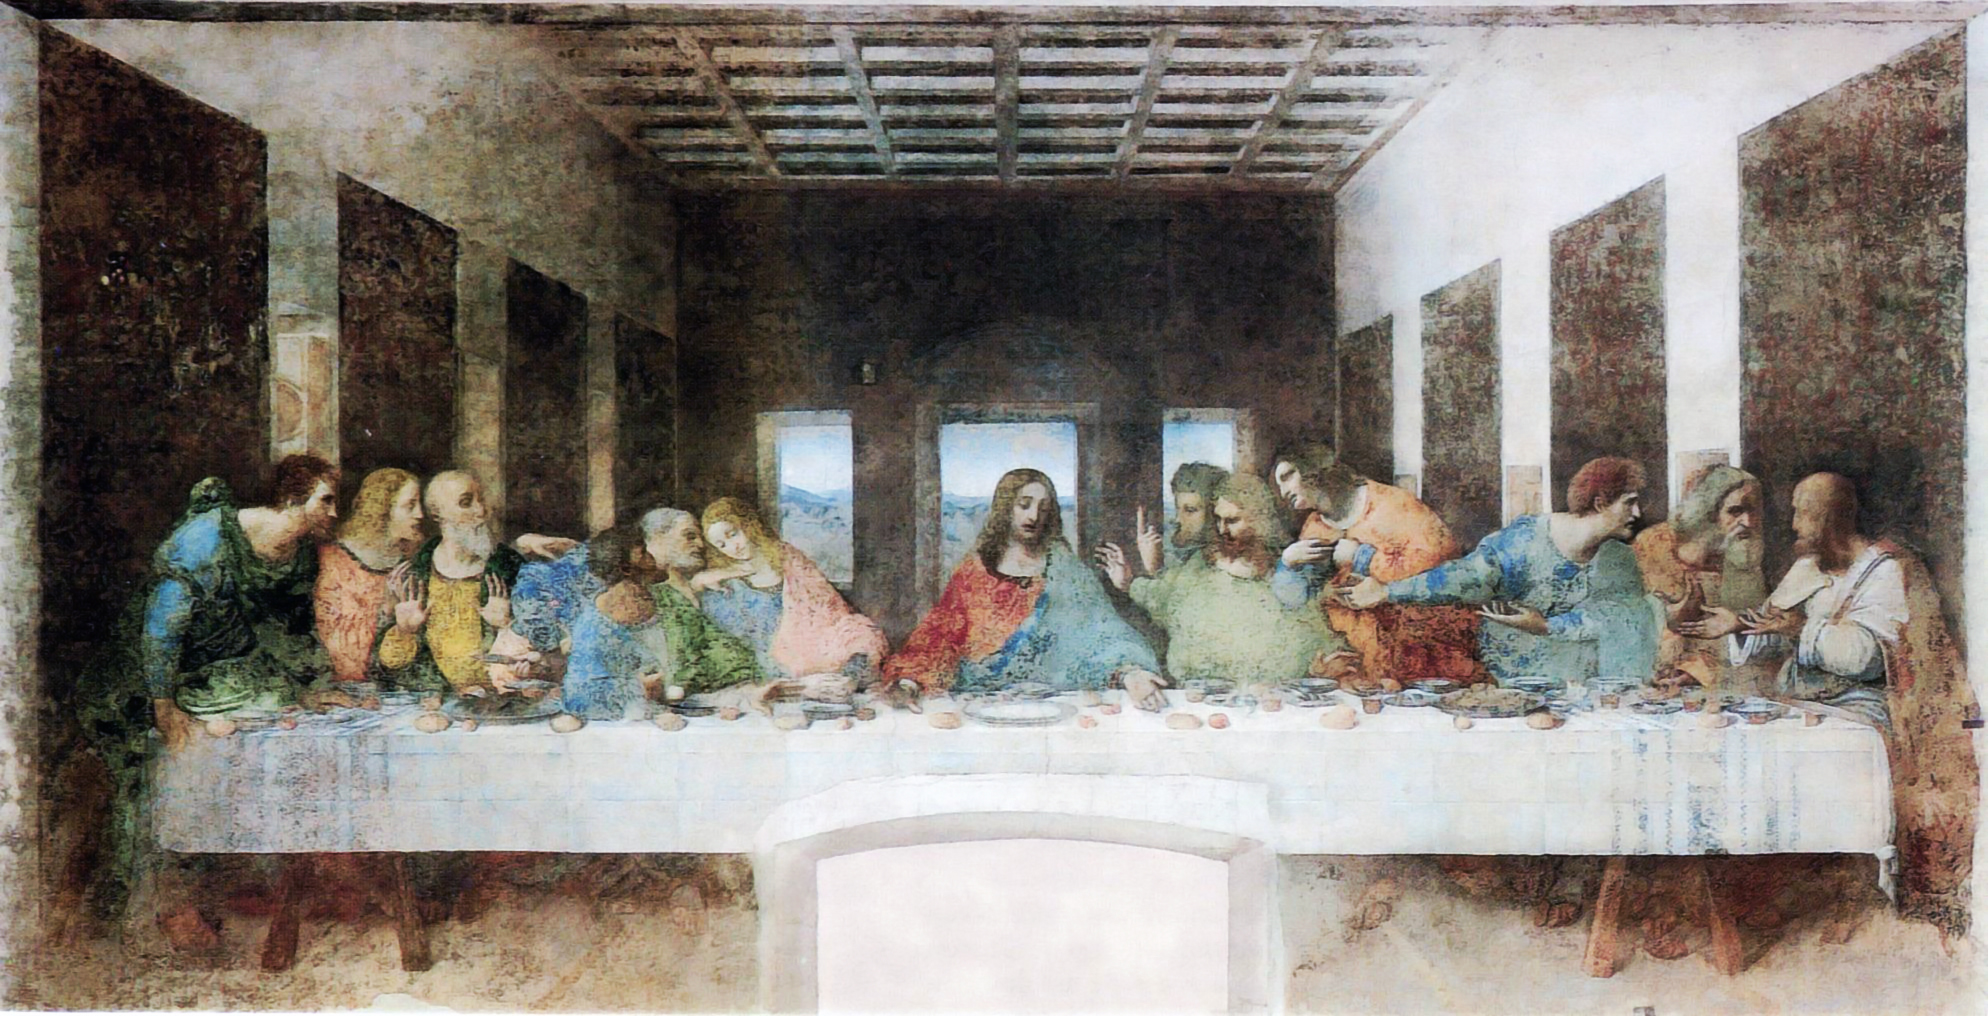 Leonardo da Vinci (1452-1519) - The Last Supper (1495-1498).